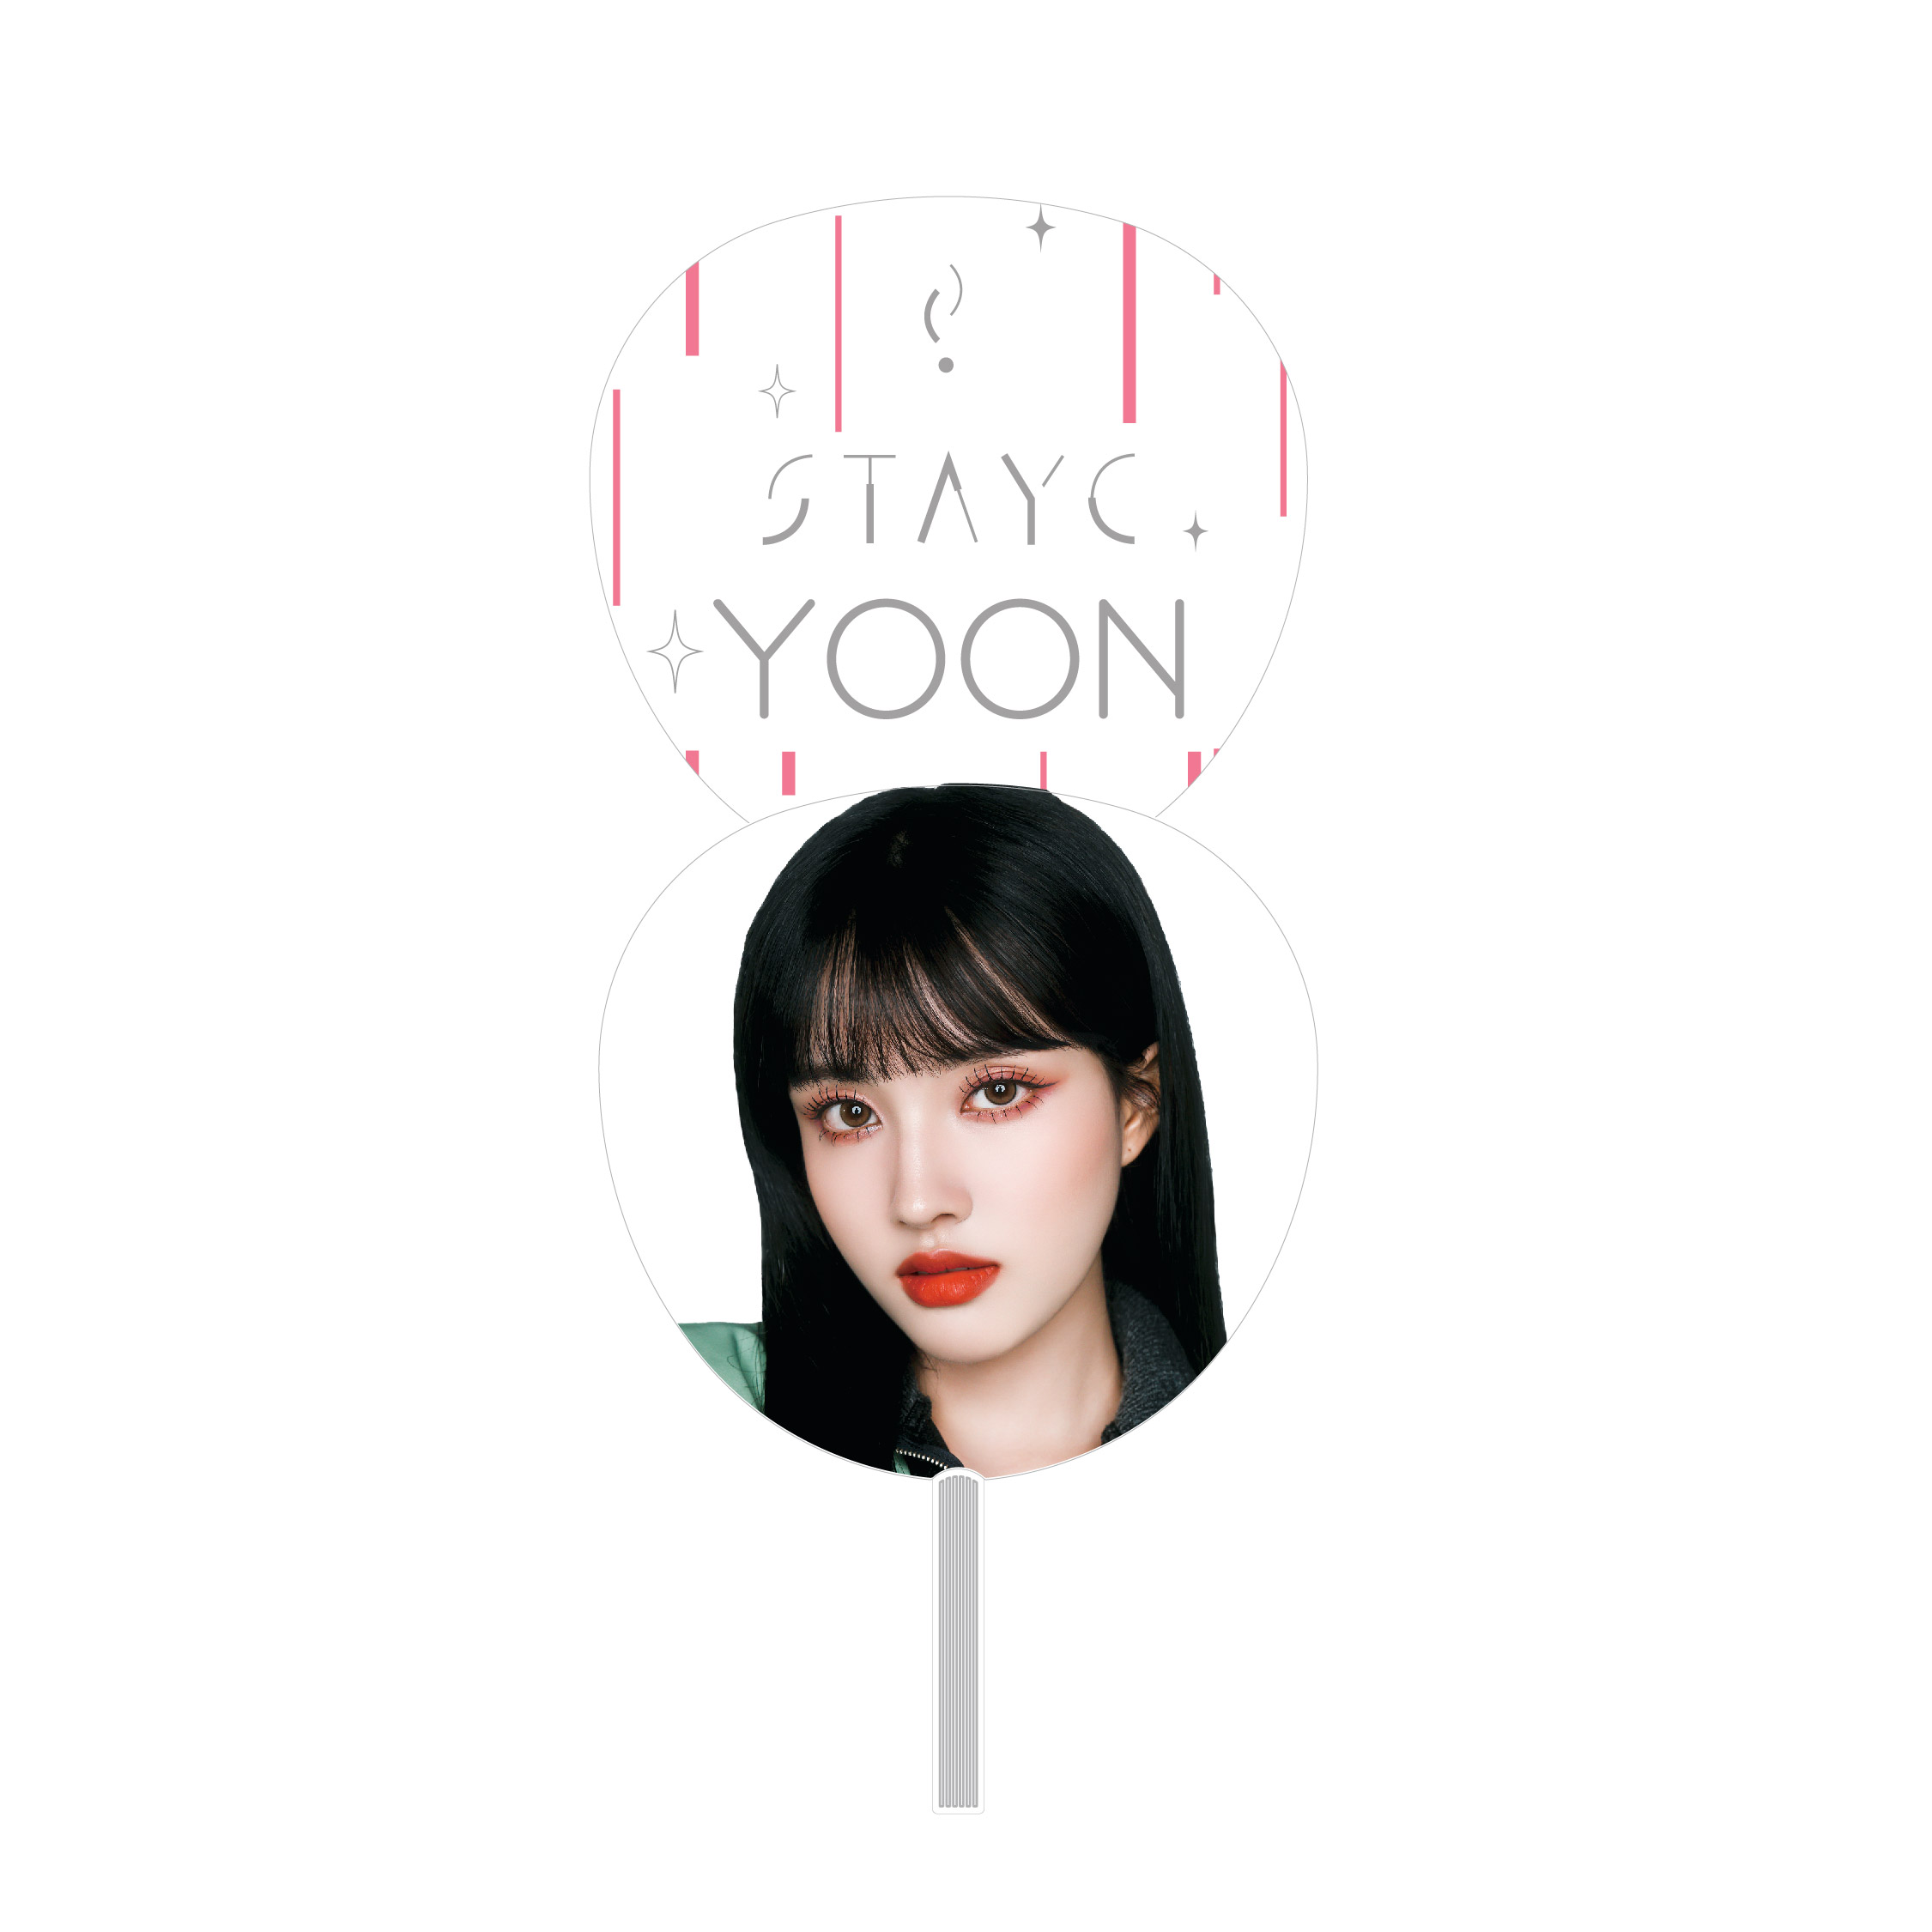 Fan [YOON]